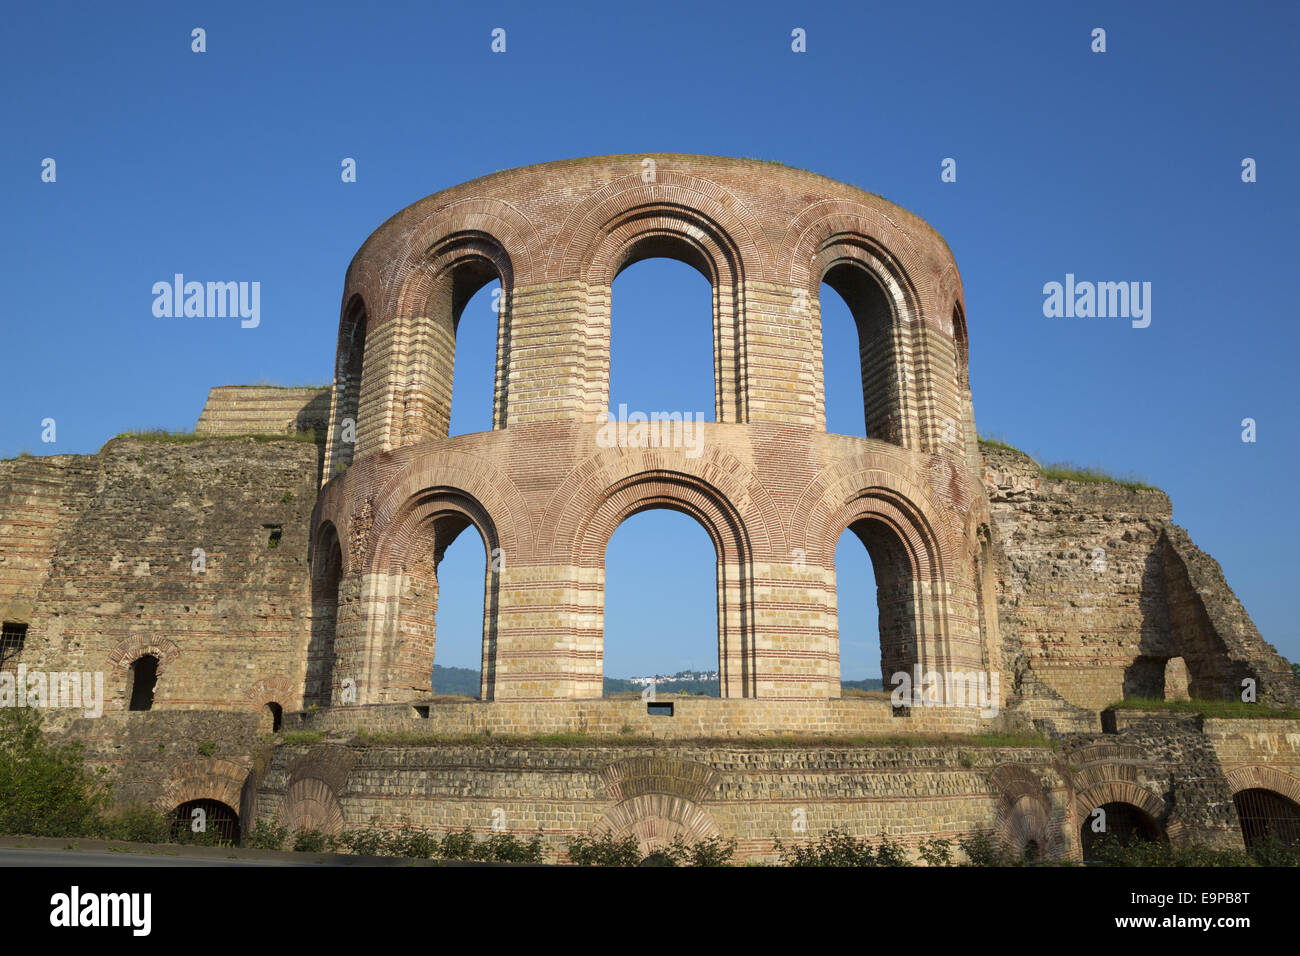 Ruines de thermes romains, Kaiserthermen (Imperial Baths), Trèves, Rhénanie-Palatinat, Allemagne, Mai Banque D'Images